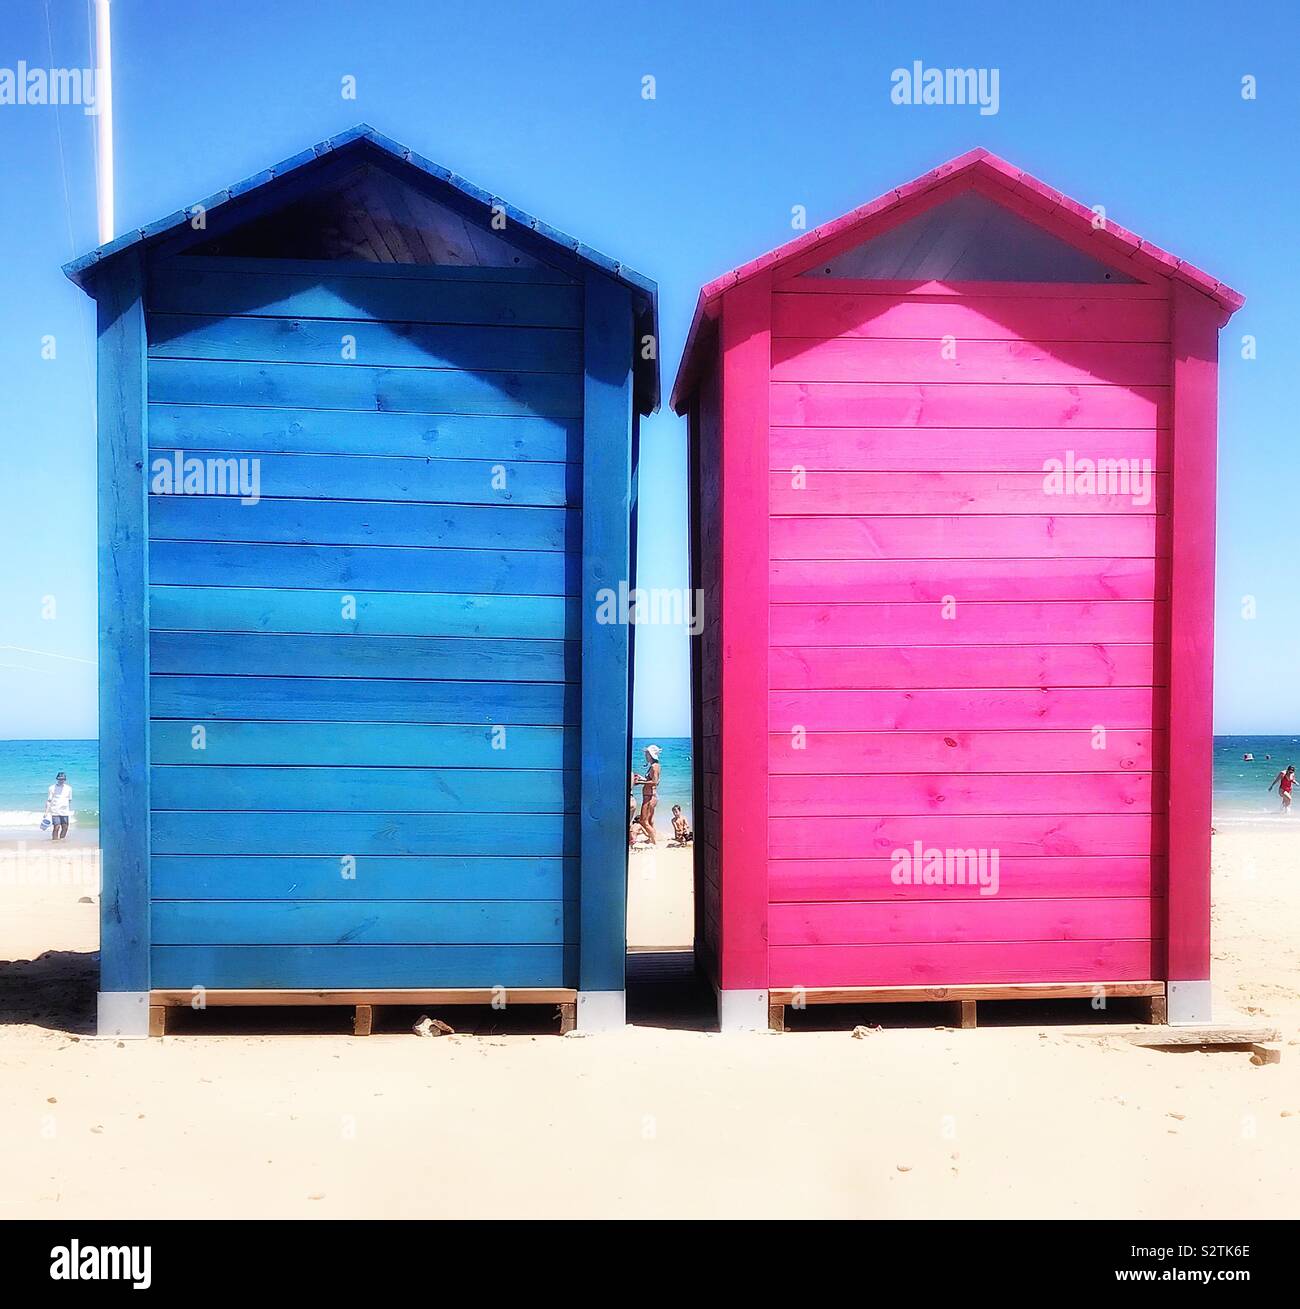 Due coloratissimi capanne in legno su di una spiaggia di sabbia, una luce blu, l'altra rosa, utilizzati come spogliatoi. Foto Stock